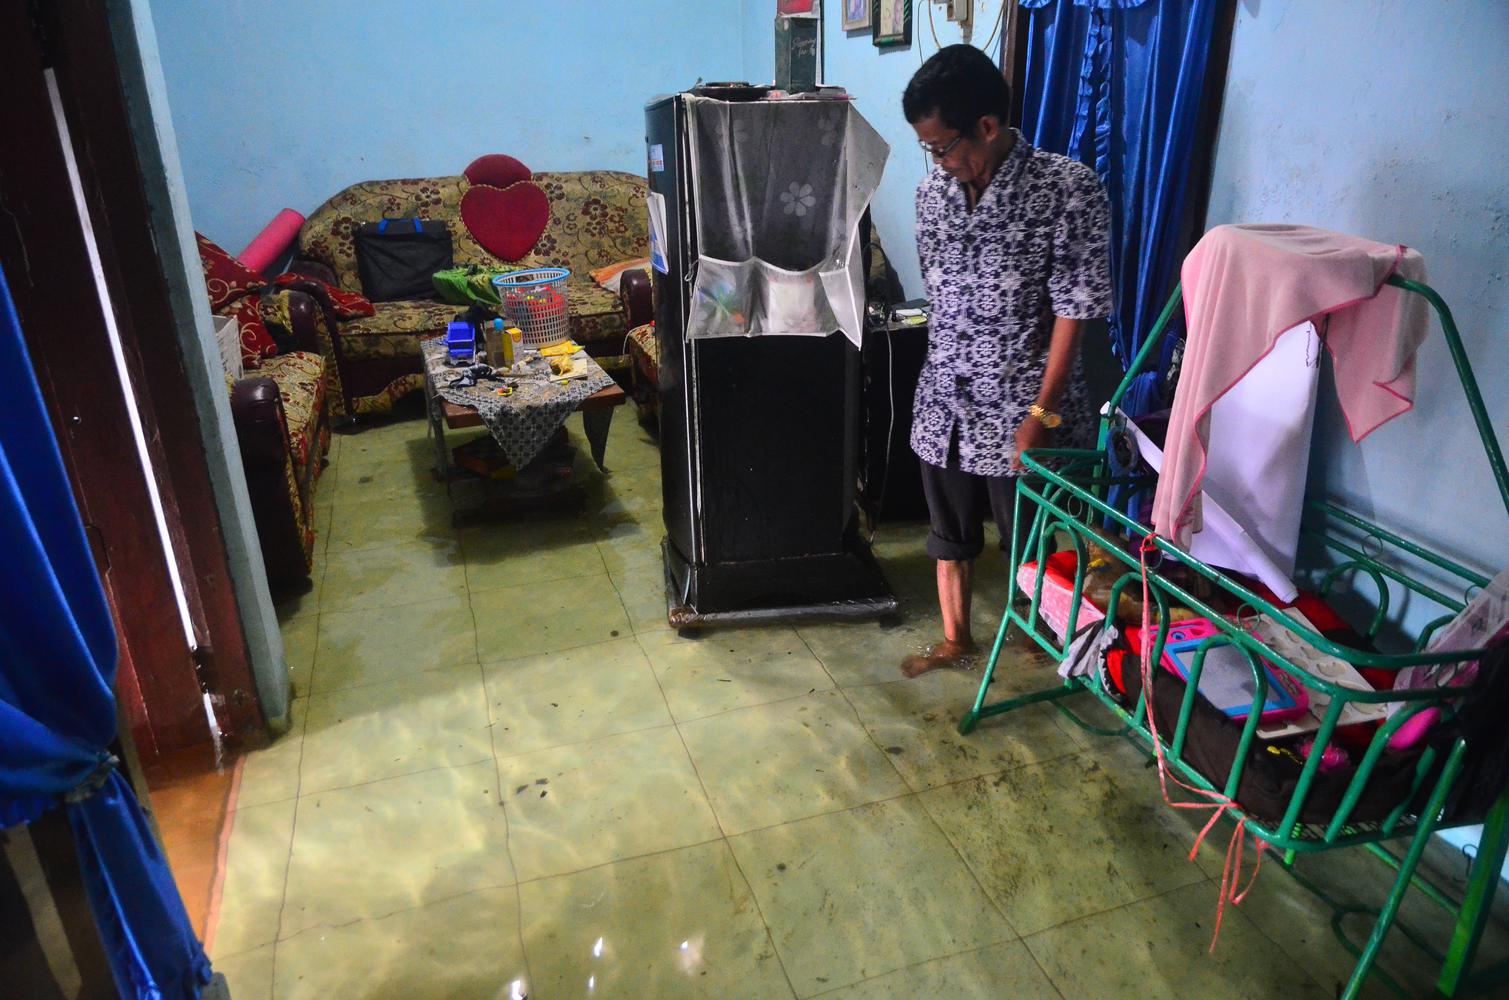 Warga mengecek rumah yang terendam banjir di Desa Jati Wetan, Kudus, Jawa Tengah, Kamis (10/12/2020). Akibat intensitas hujan yang tinggi sebanyak 75 rumah di wilayah itu terendam banjir dengan ketinggian 15-60 centimeter sejak dua hari terakhir.